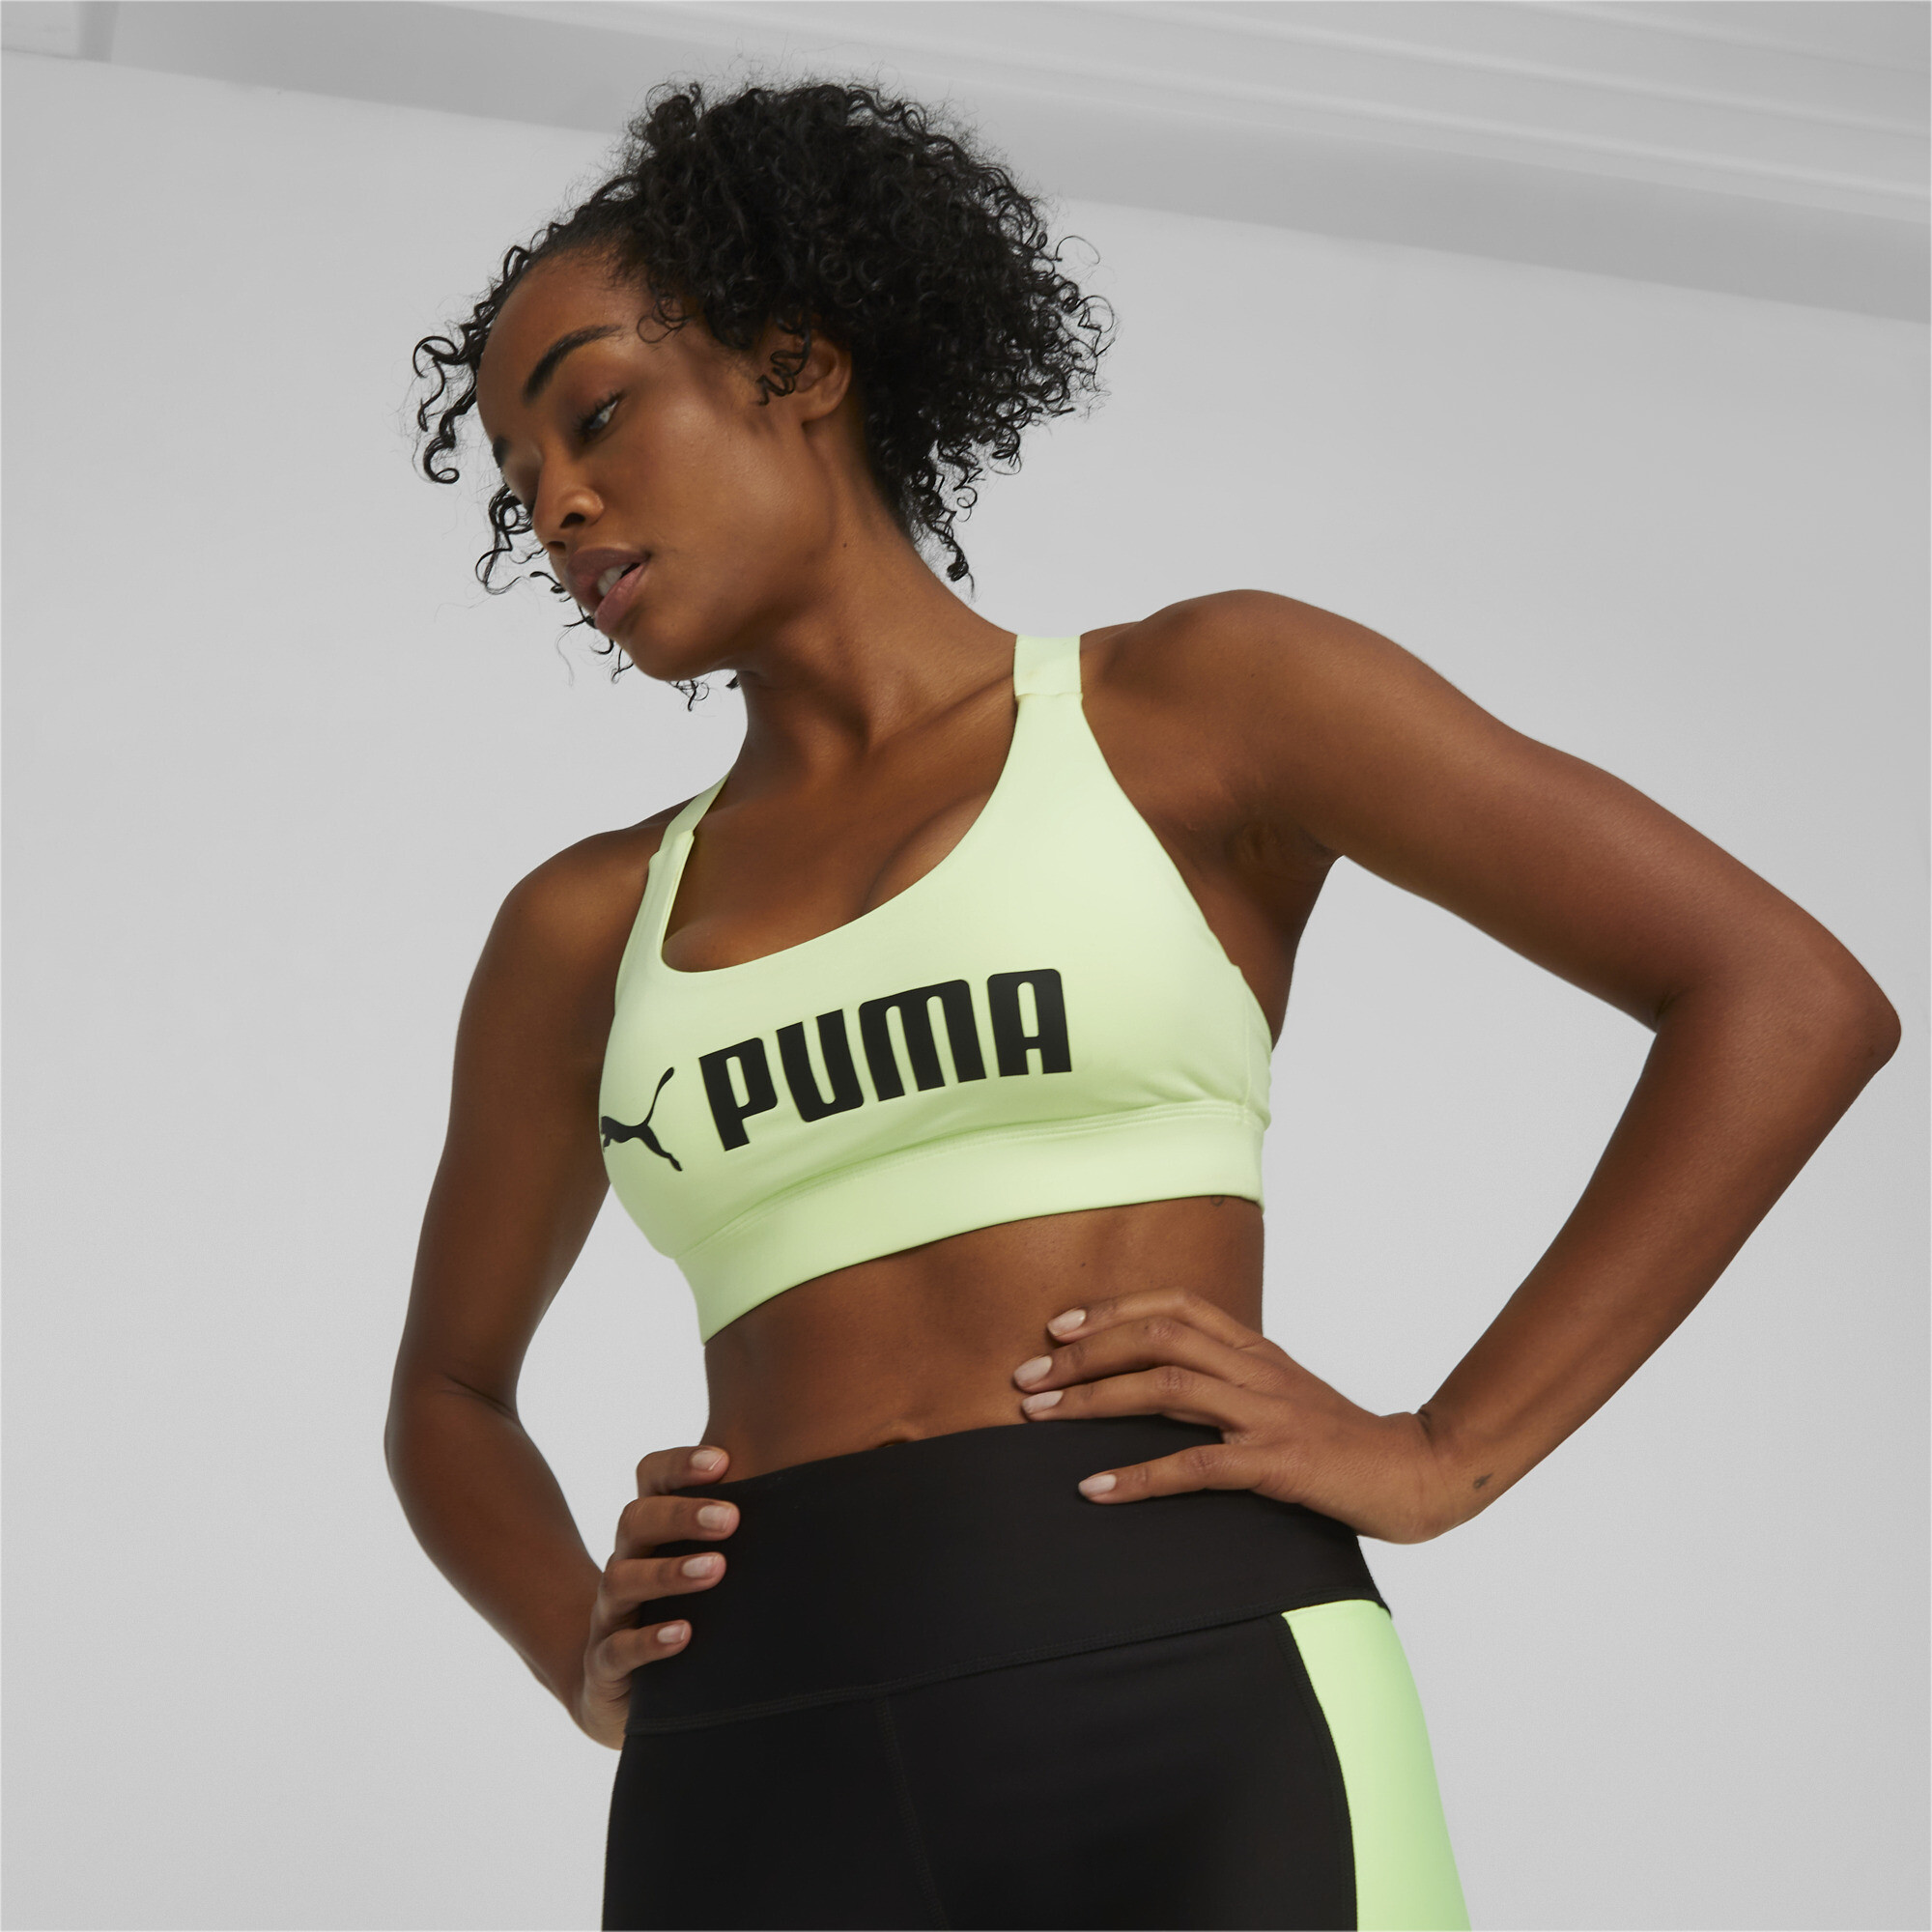 Top Fitness Puma Mid Impact Concept Bra - Adulto em Promoção